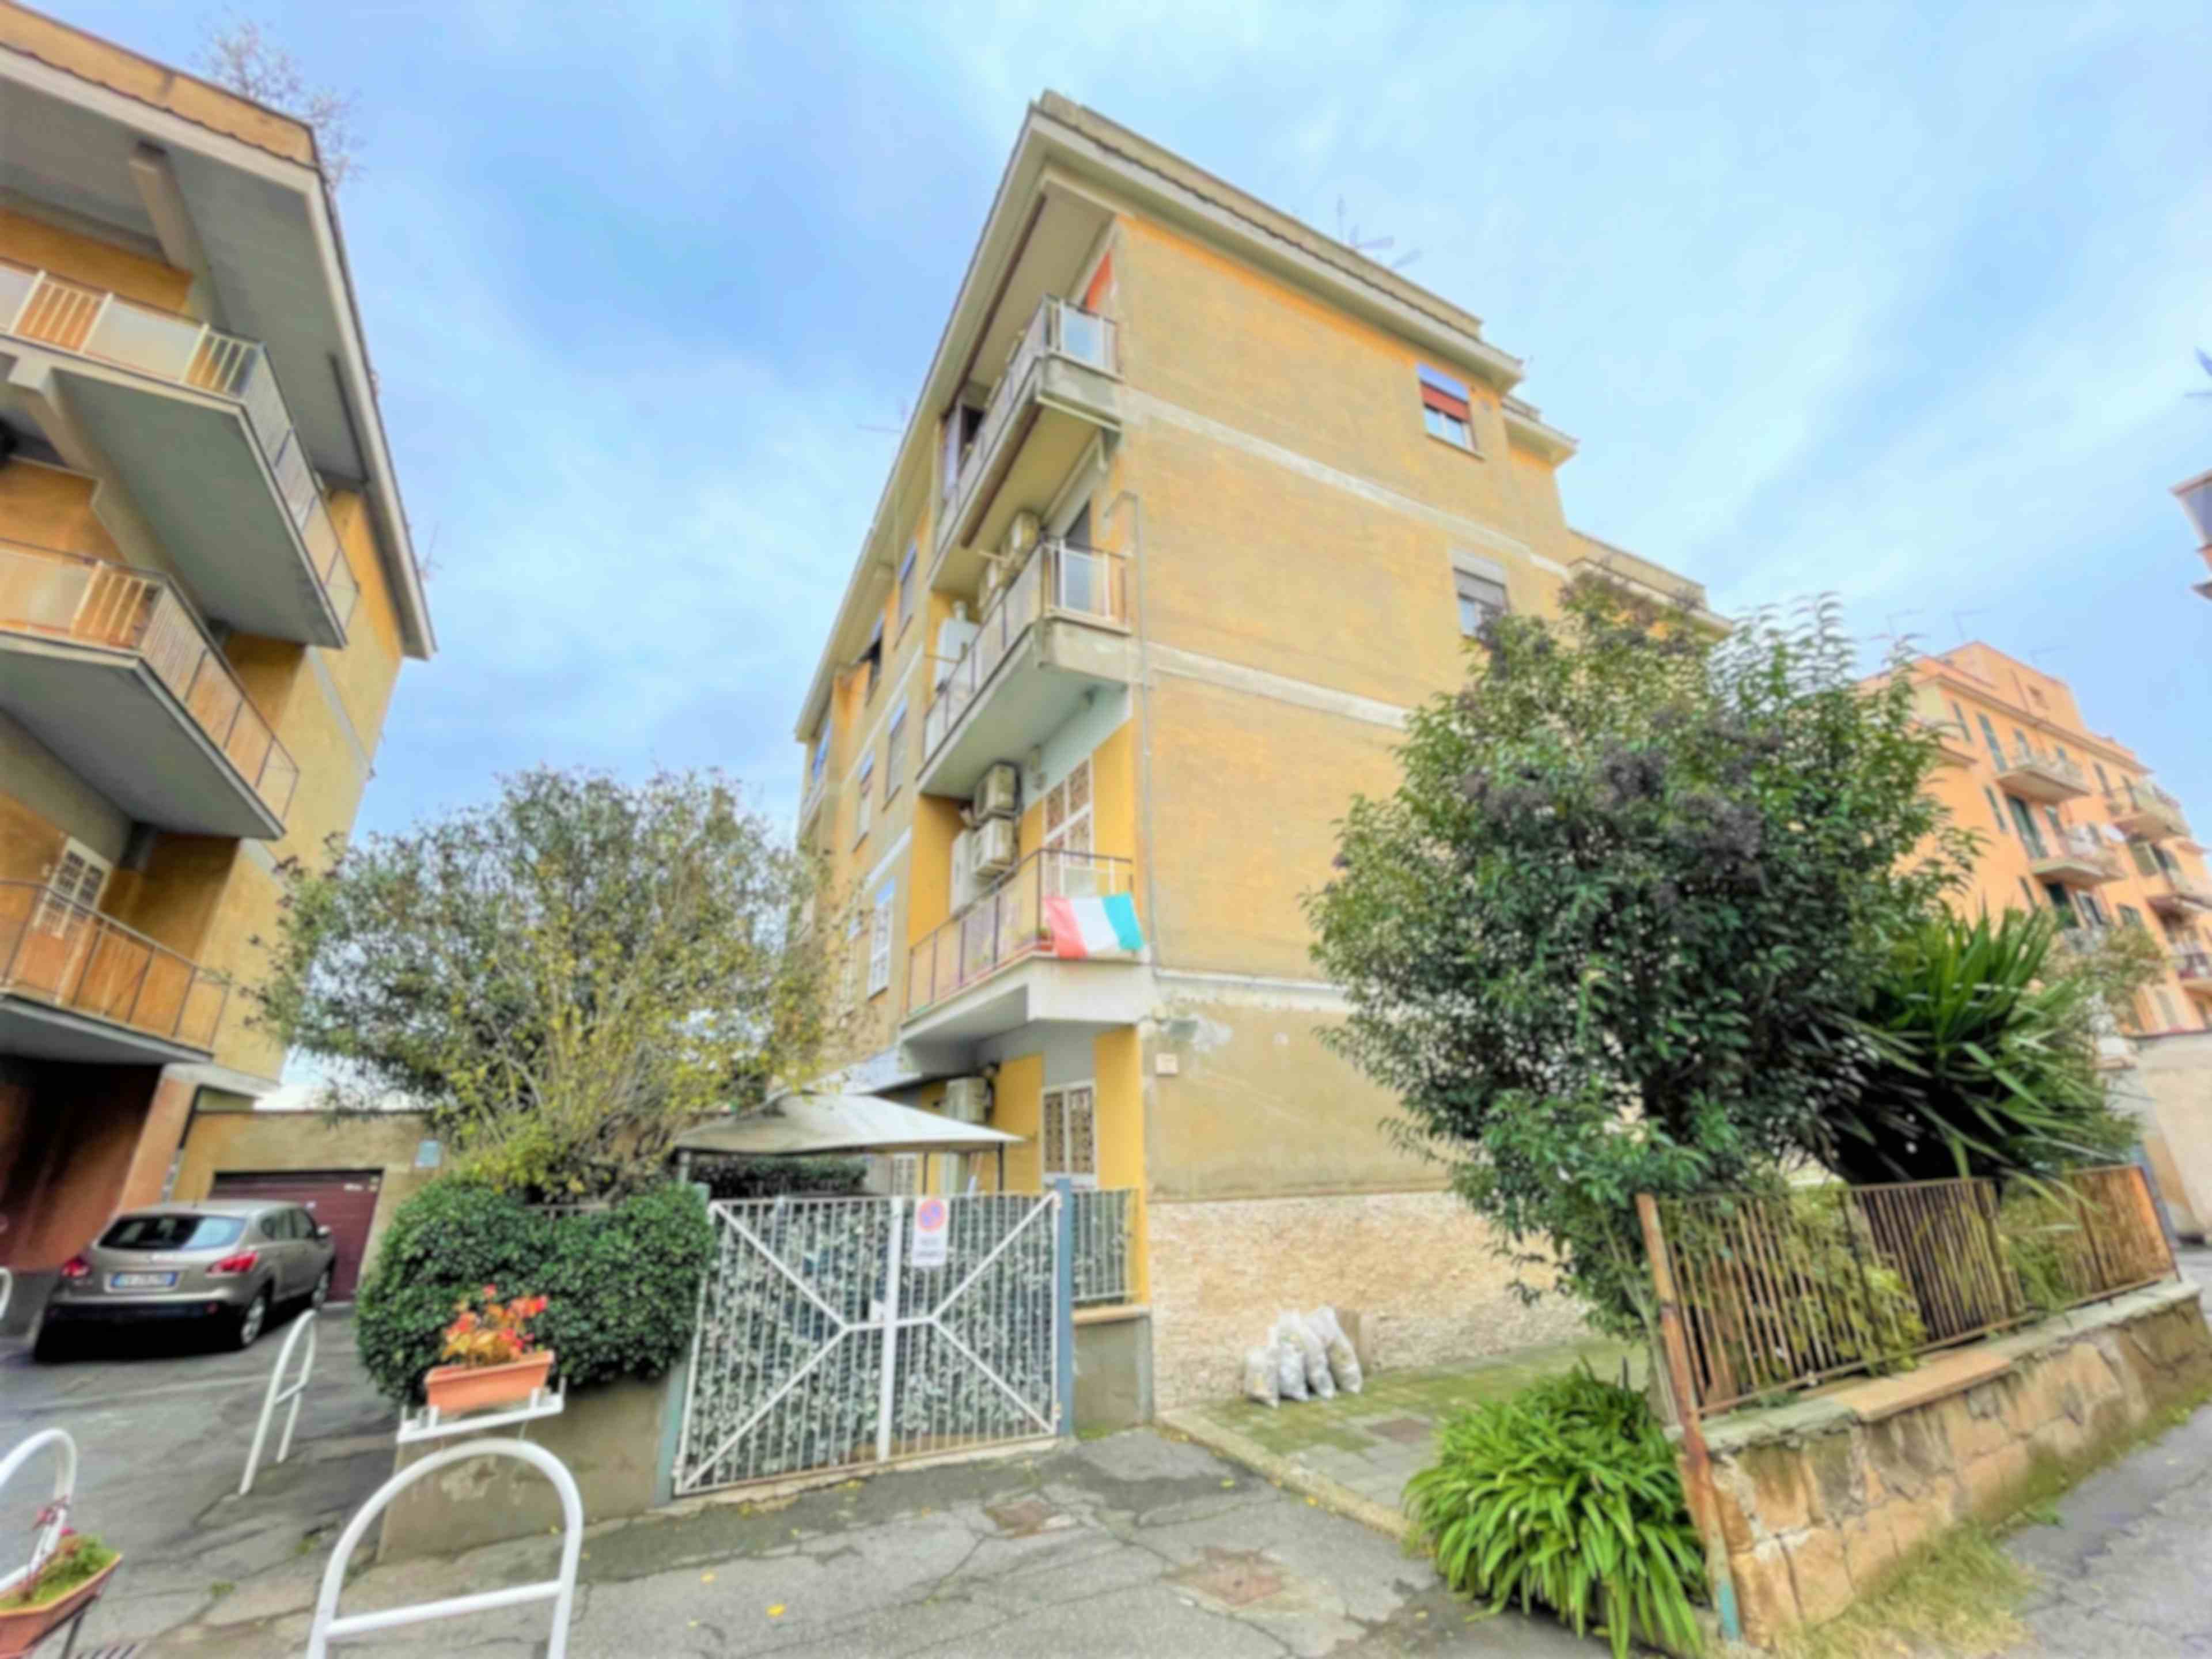 Three-bedroom Apartment of 120m² in Via degli Armenti